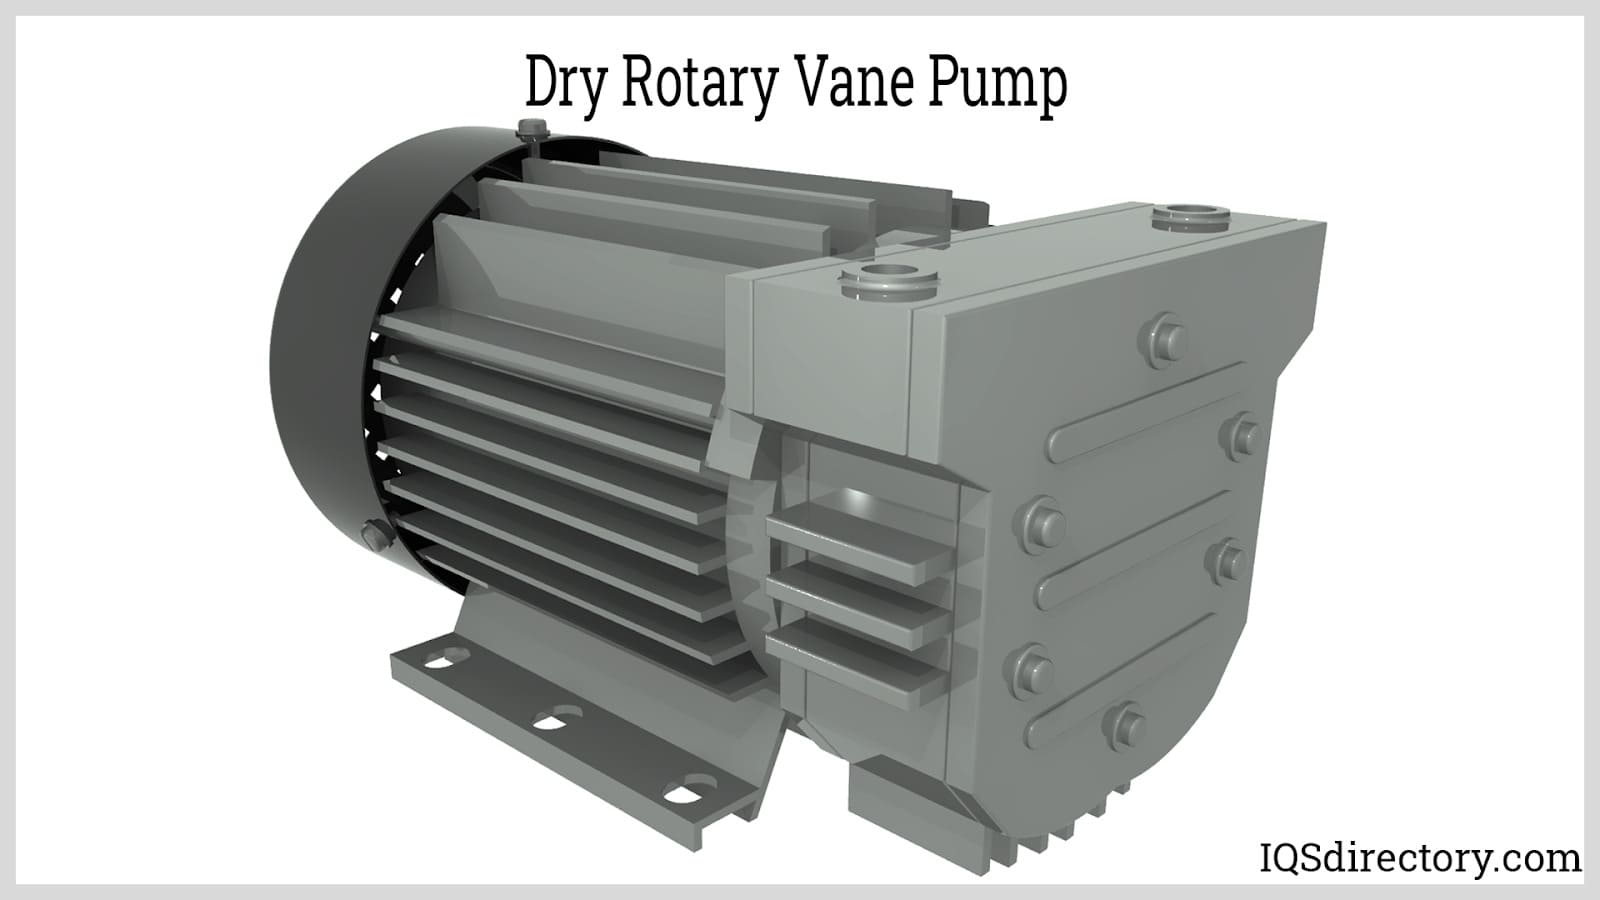 Dry Rotary Vane Pump